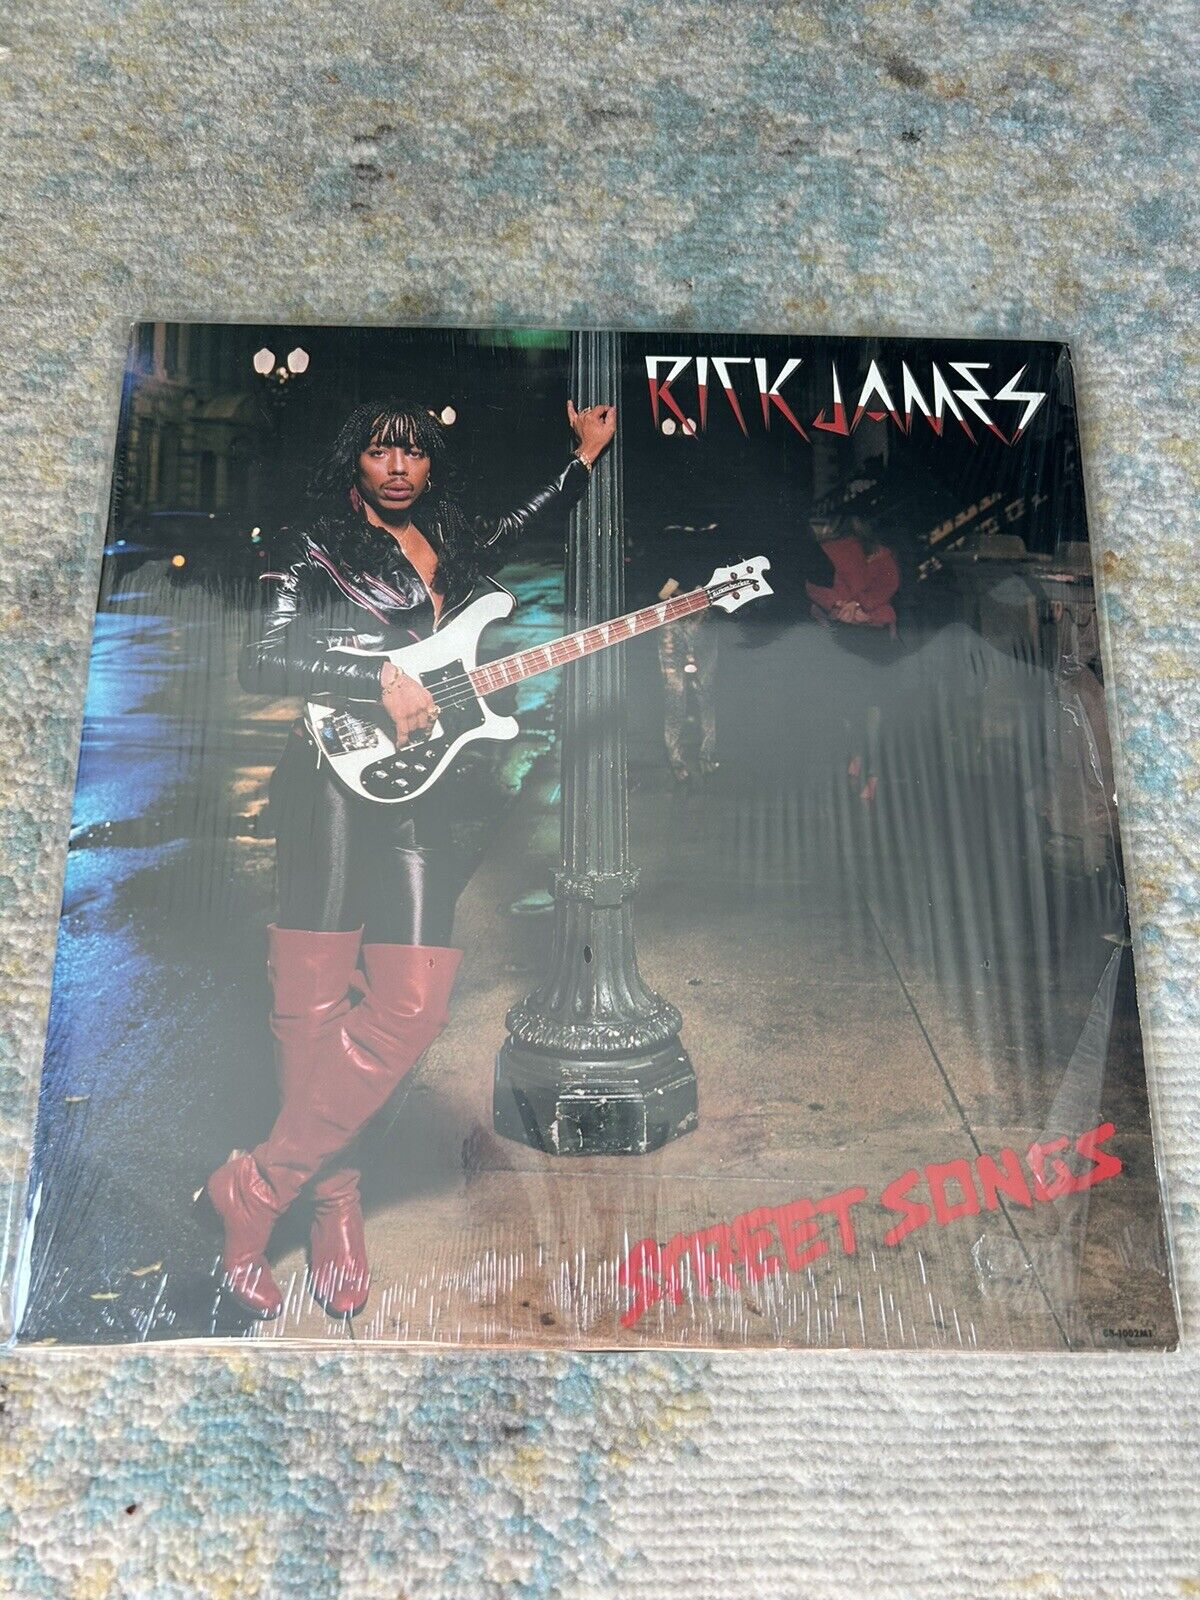 Rick James Street Songs LP Gordy G8-1002M1 1st OG 1981 Pressing In Shrink EX/EX